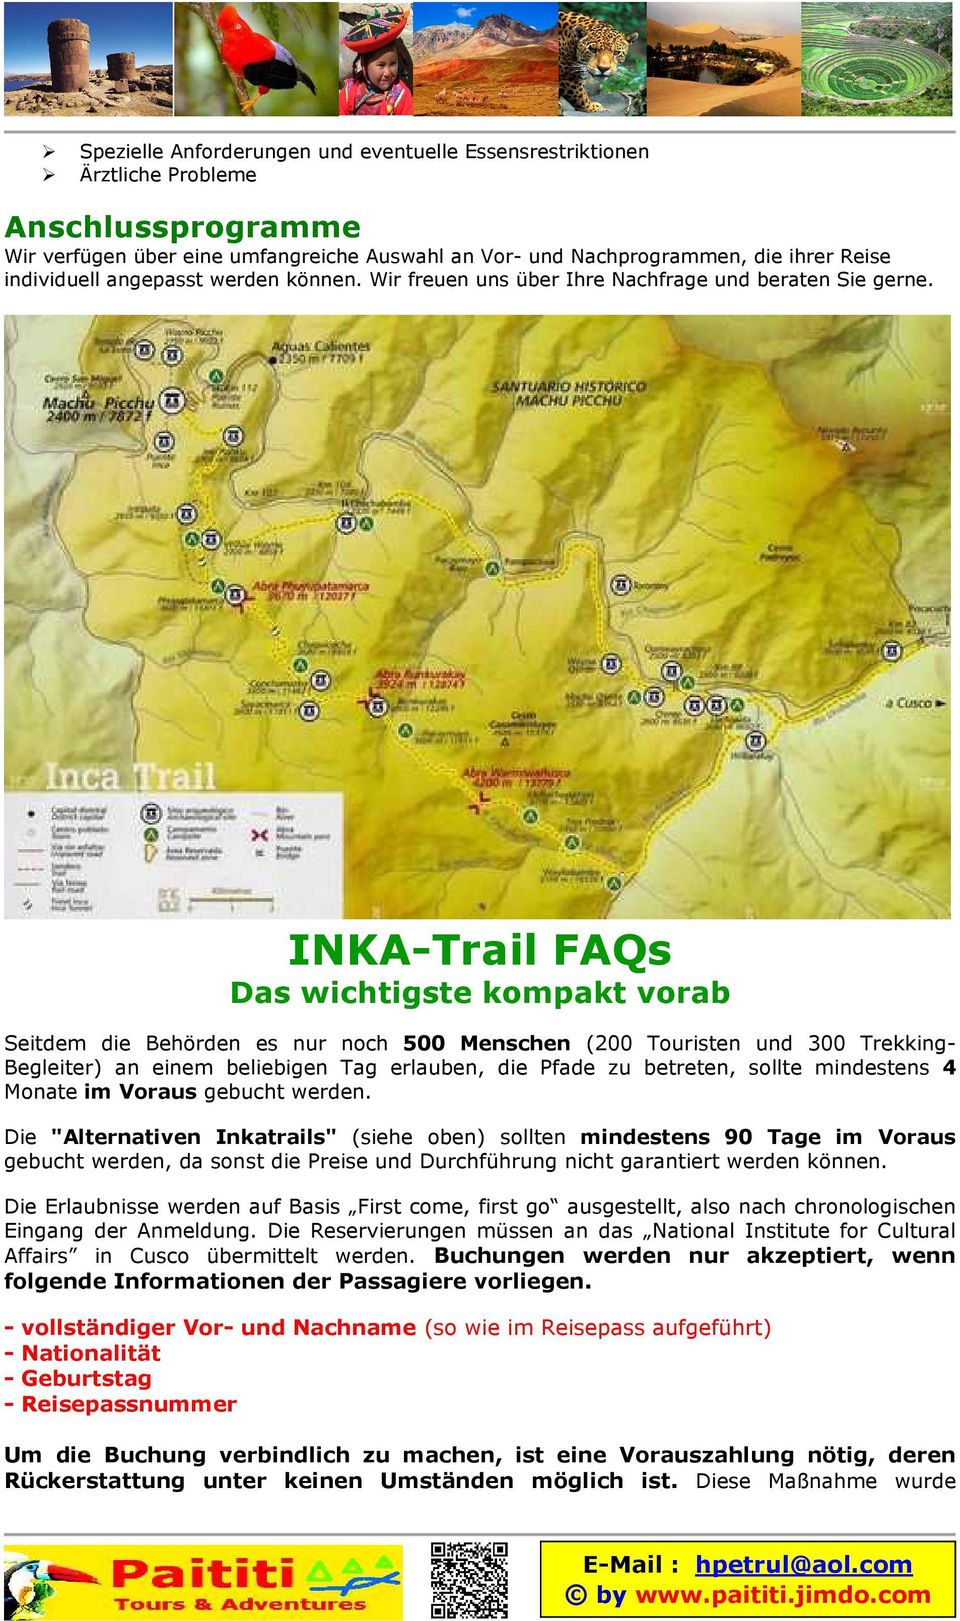 INKA-Trail FAQs Das wichtigste kompakt vorab Seitdem die Behörden es nur noch 500 Menschen (200 Touristen und 300 Trekking- Begleiter) an einem beliebigen Tag erlauben, die Pfade zu betreten, sollte